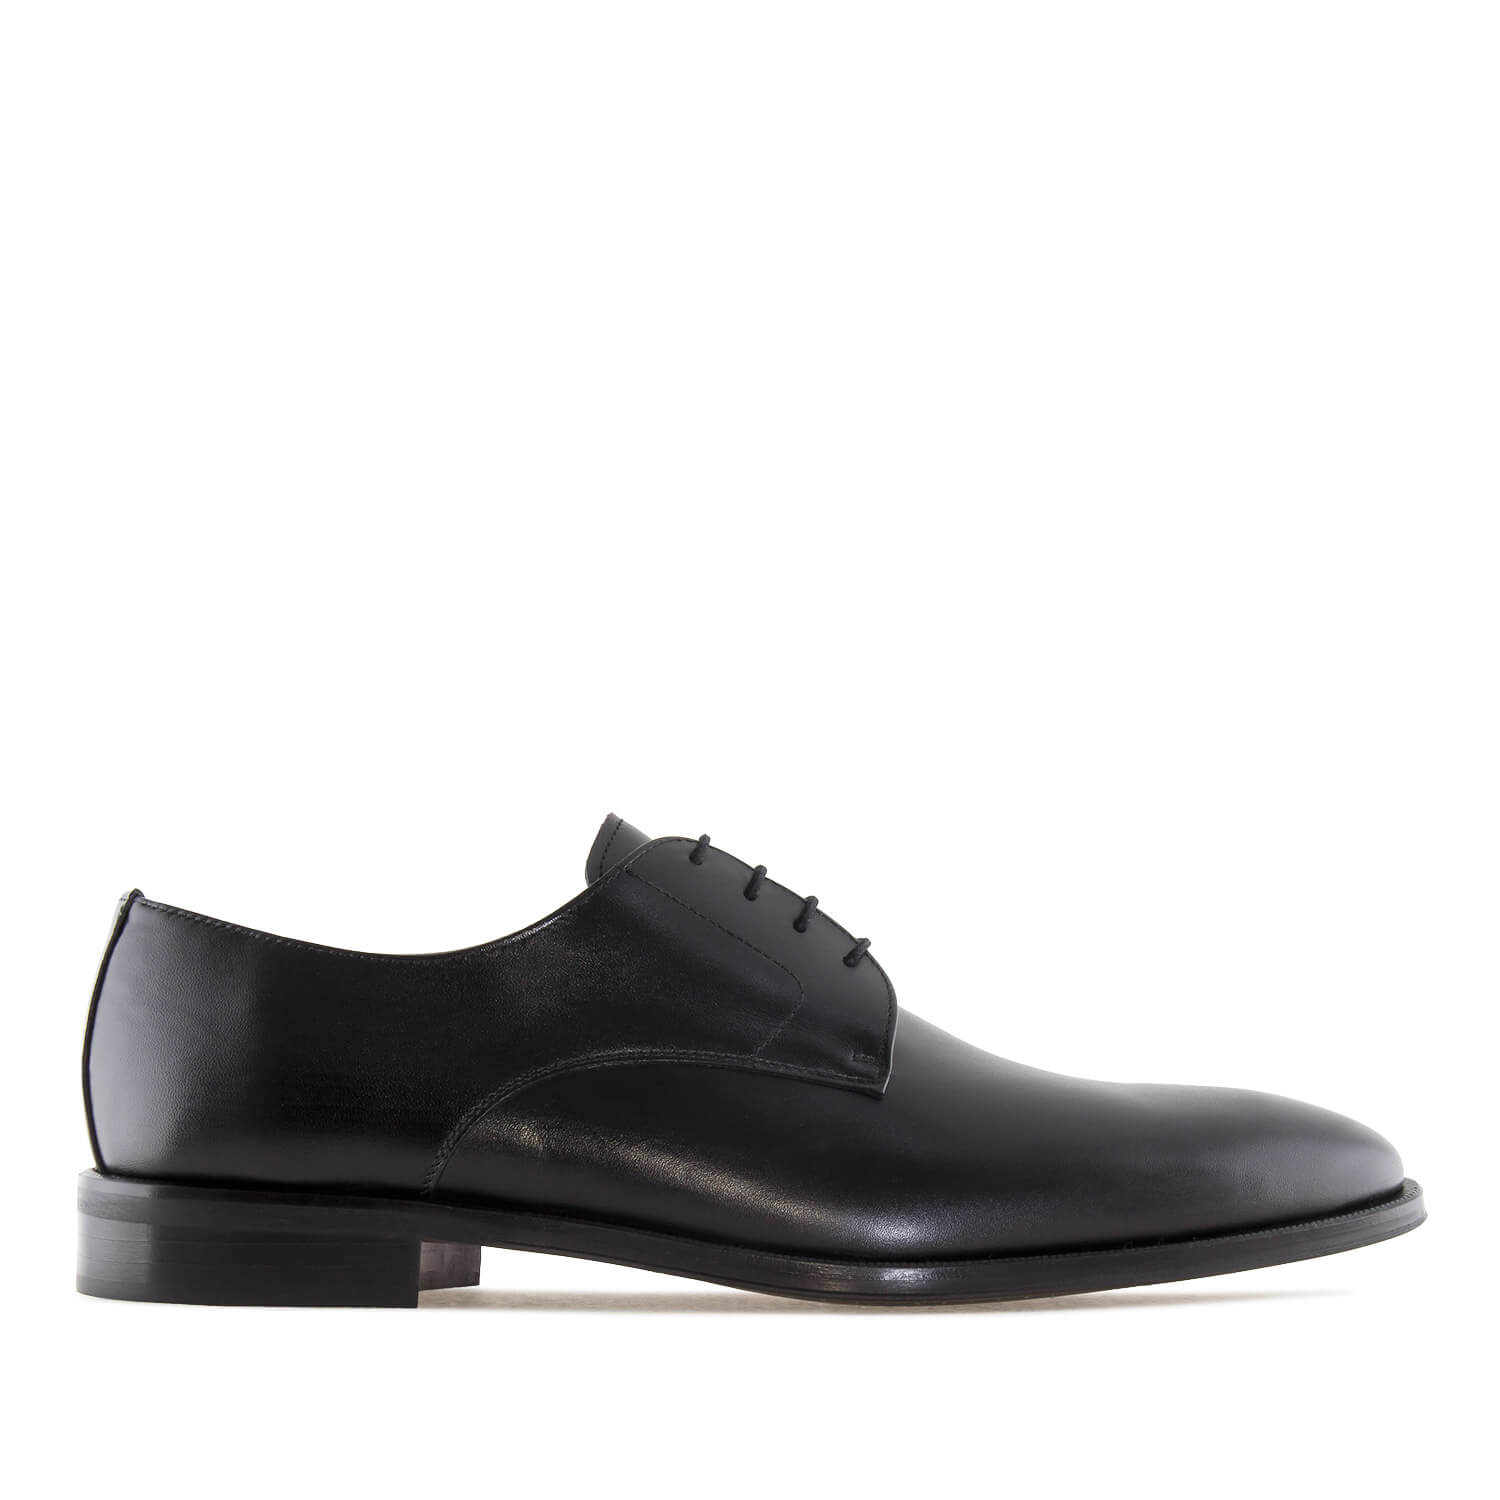 Men's Dress Black Leather Shoes 